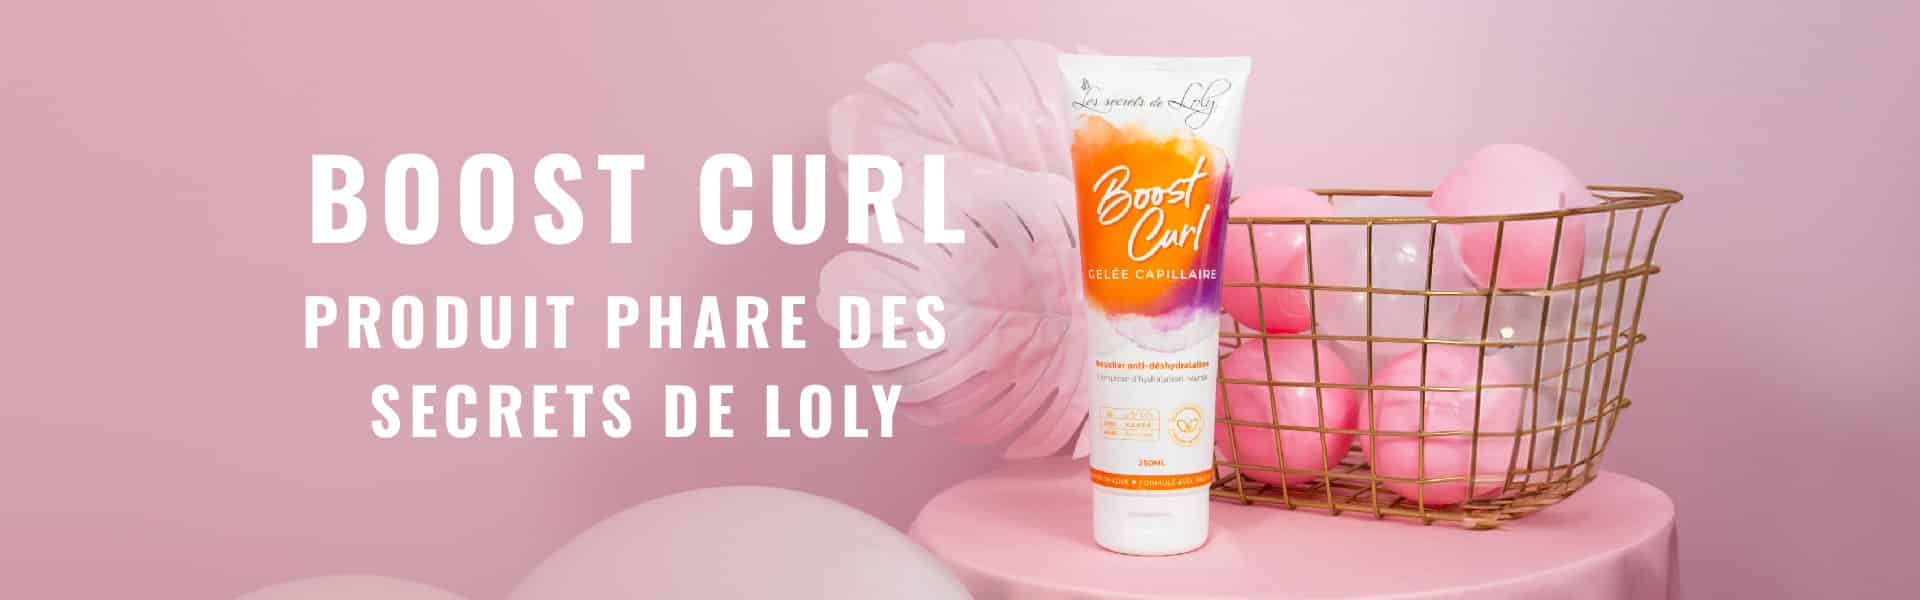 Le Boost Curl : produit phare des Secrets de Loly pour des boucles définies et hydratées